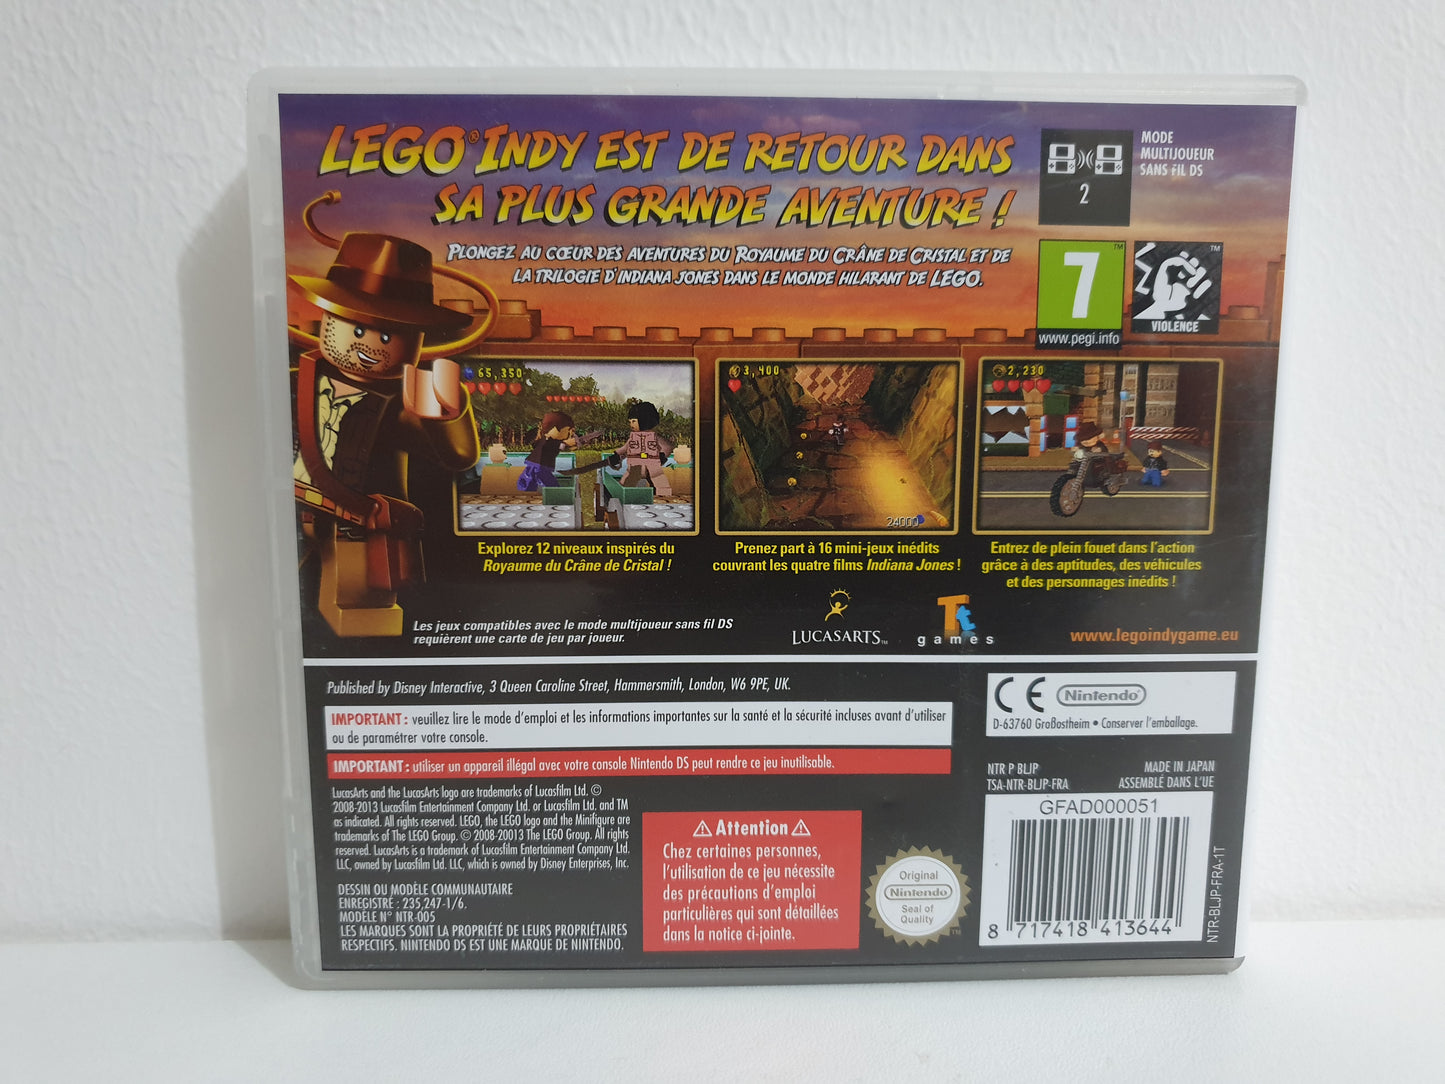 Lego Indiana Jones 2 - L'aventure continue Nintendo DS - Occasion très bon état